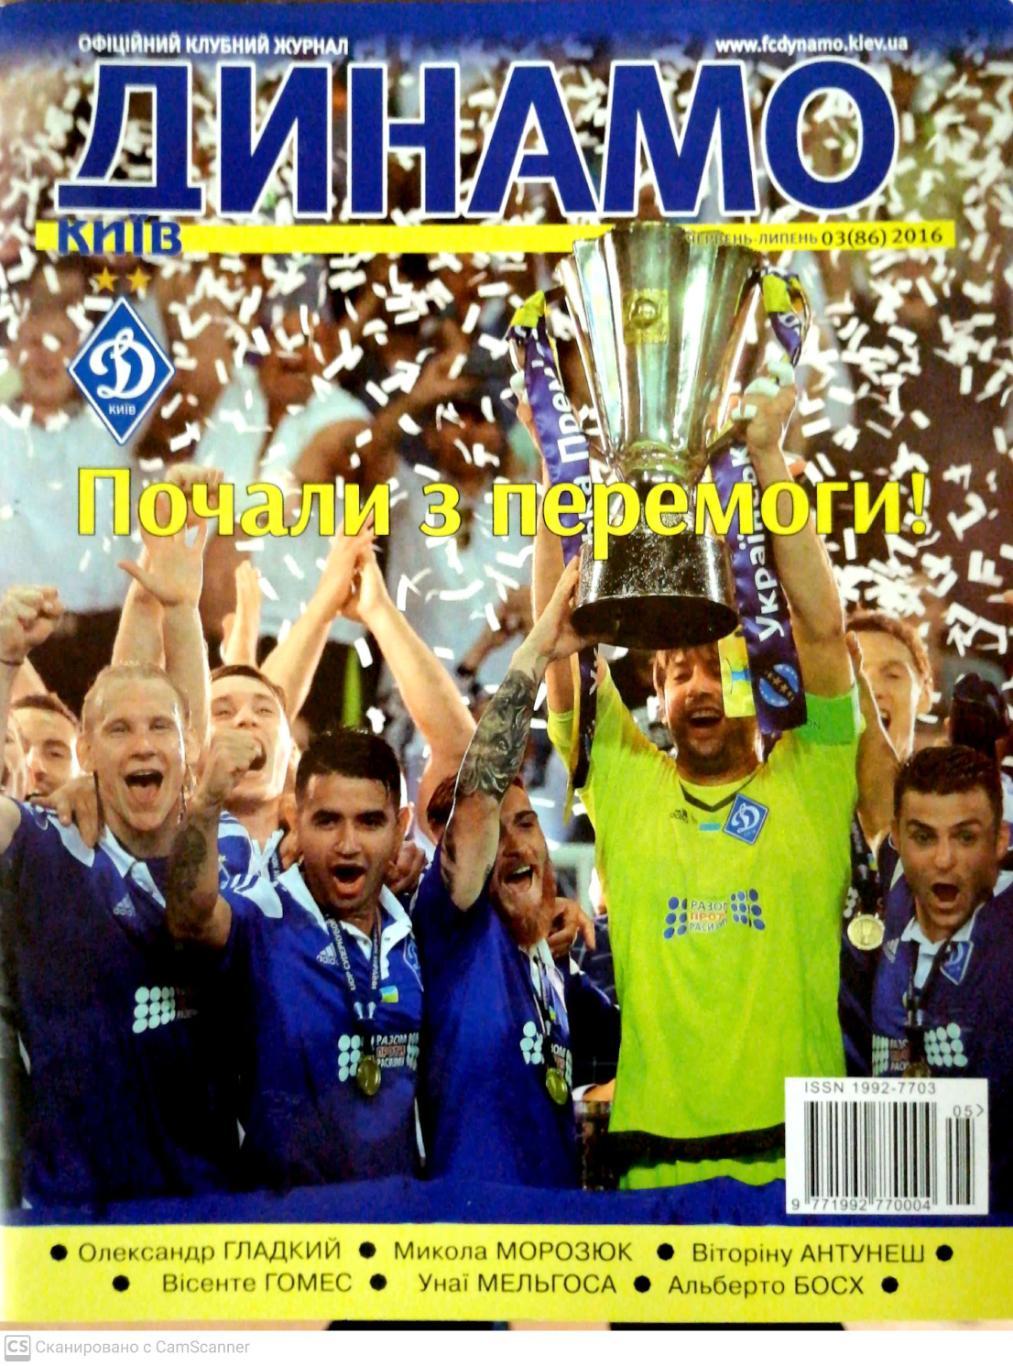 Официальный журнал ФК Динамо Киев. №3 (86). 2016 г. (июнь-июль). Укр.яз.